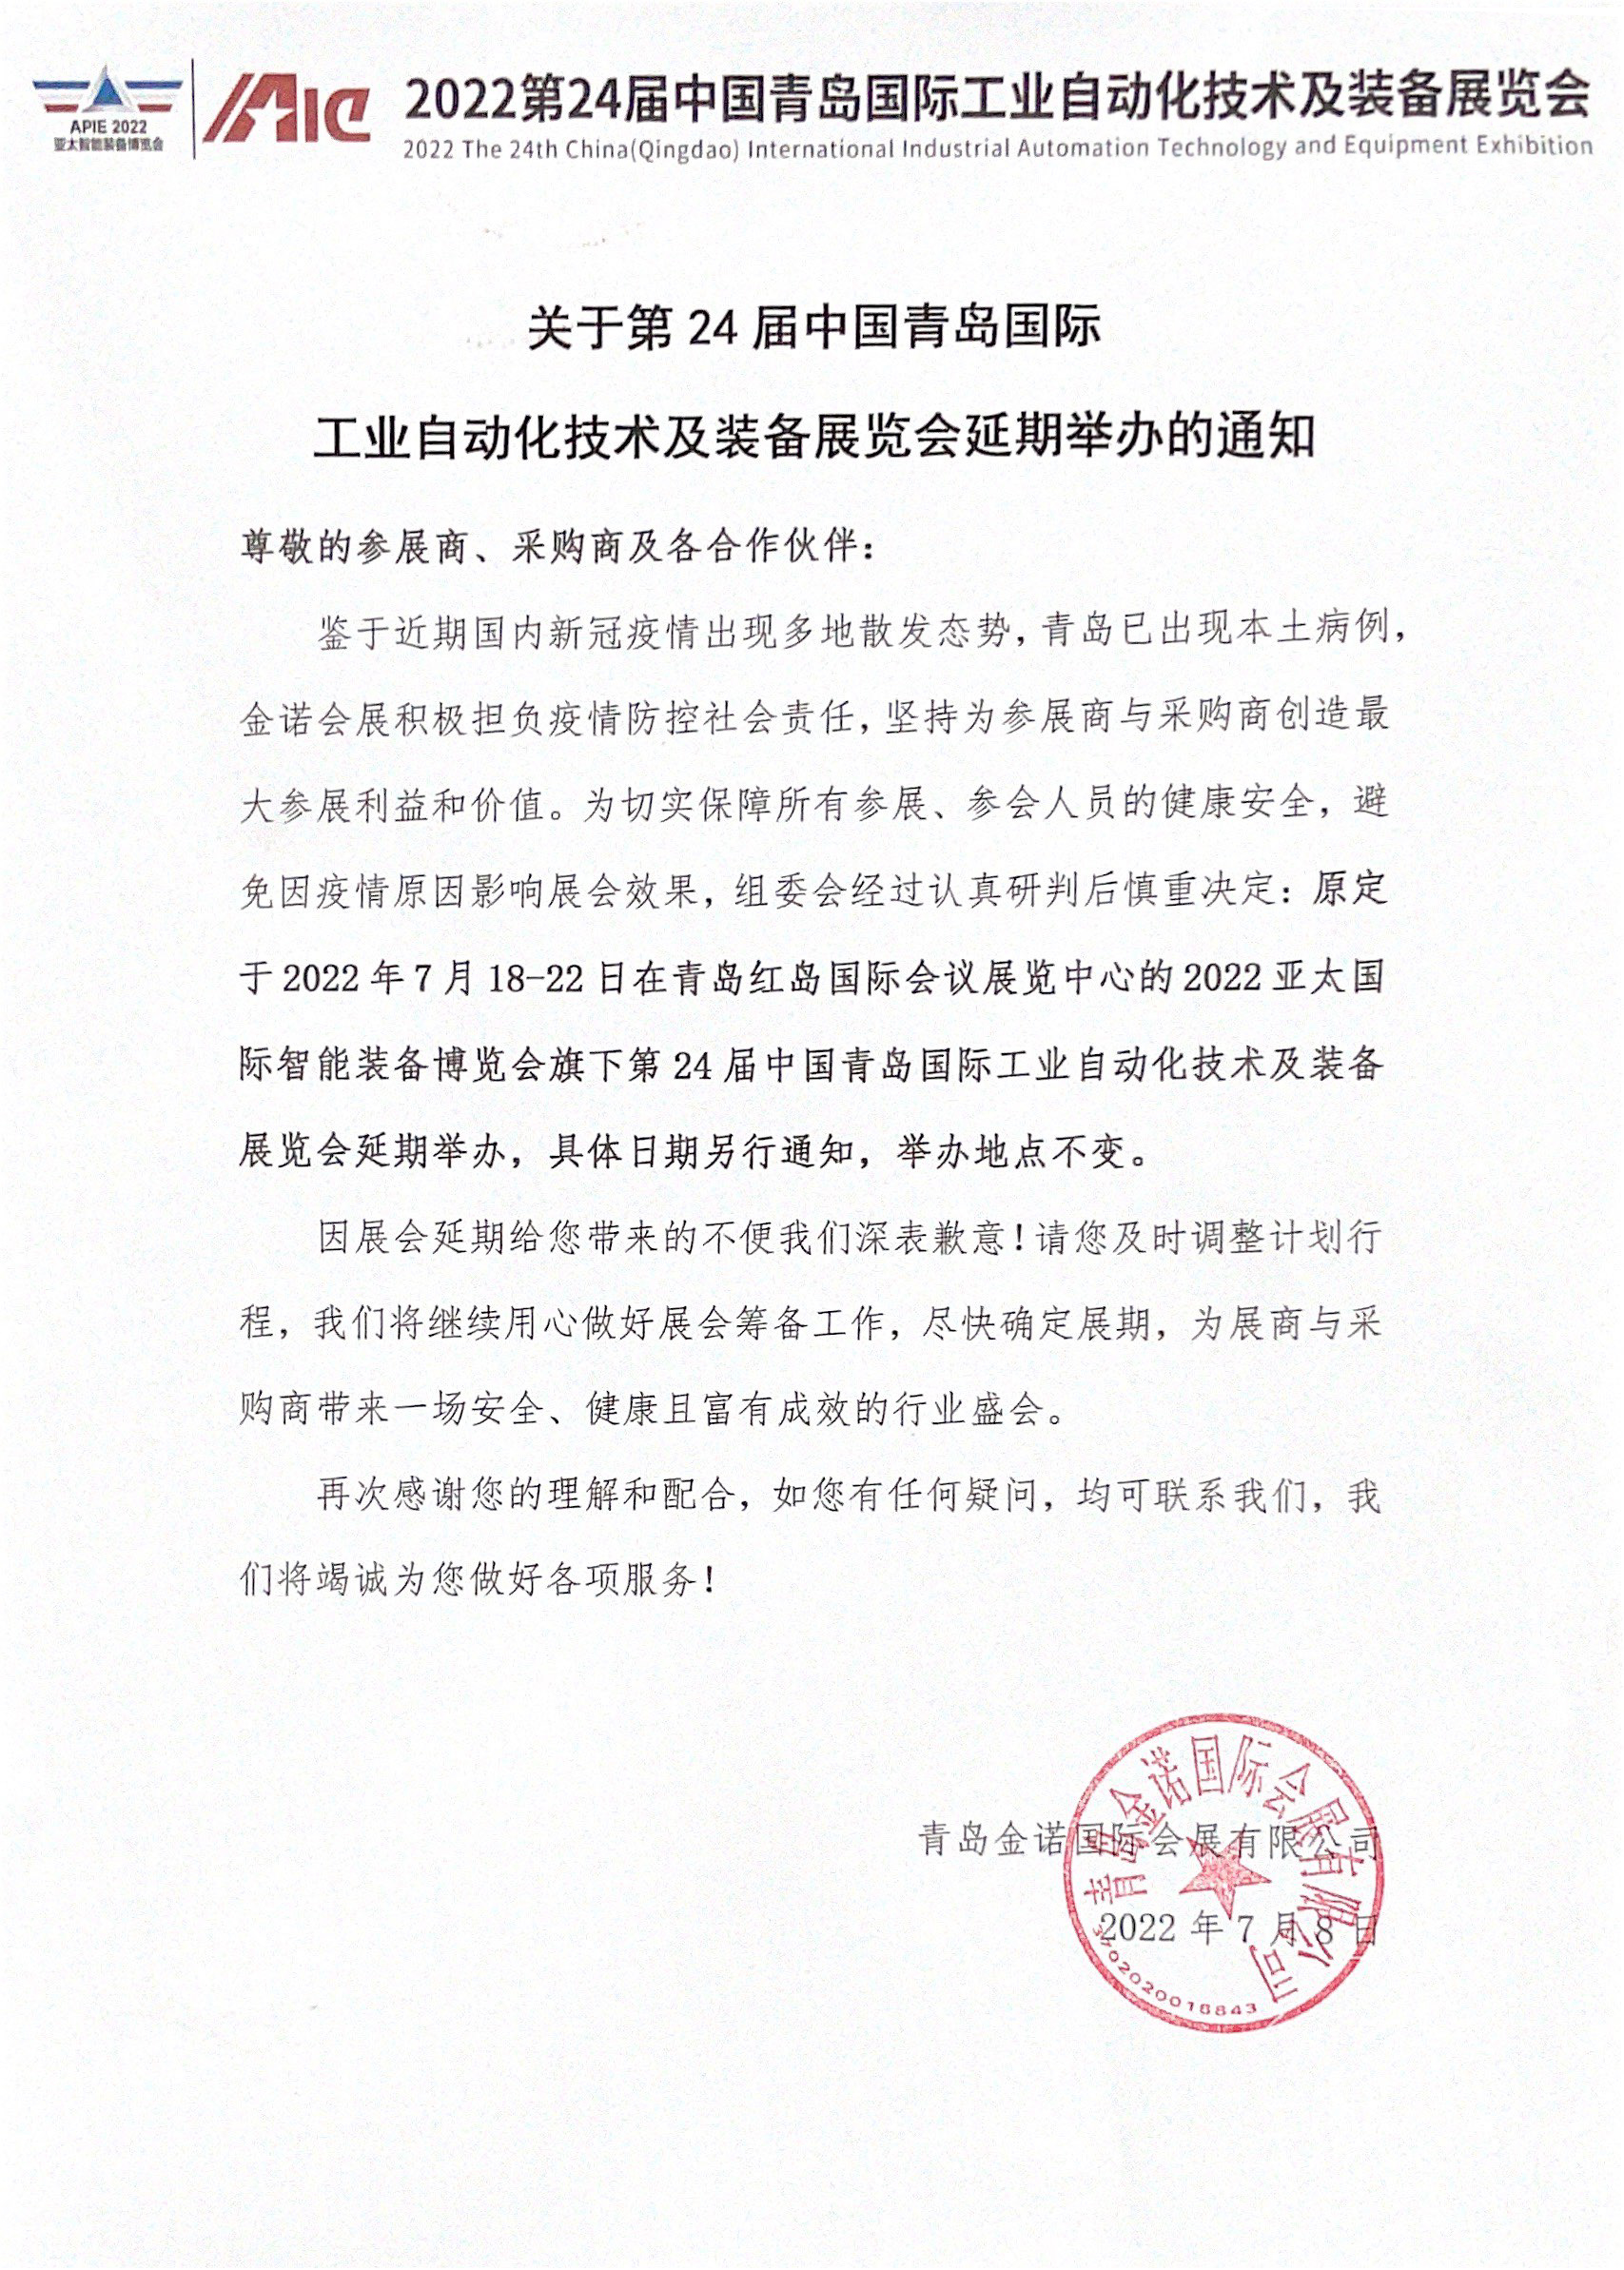 关于第24届中国青岛自动化技术及装备展览会延期举办通知